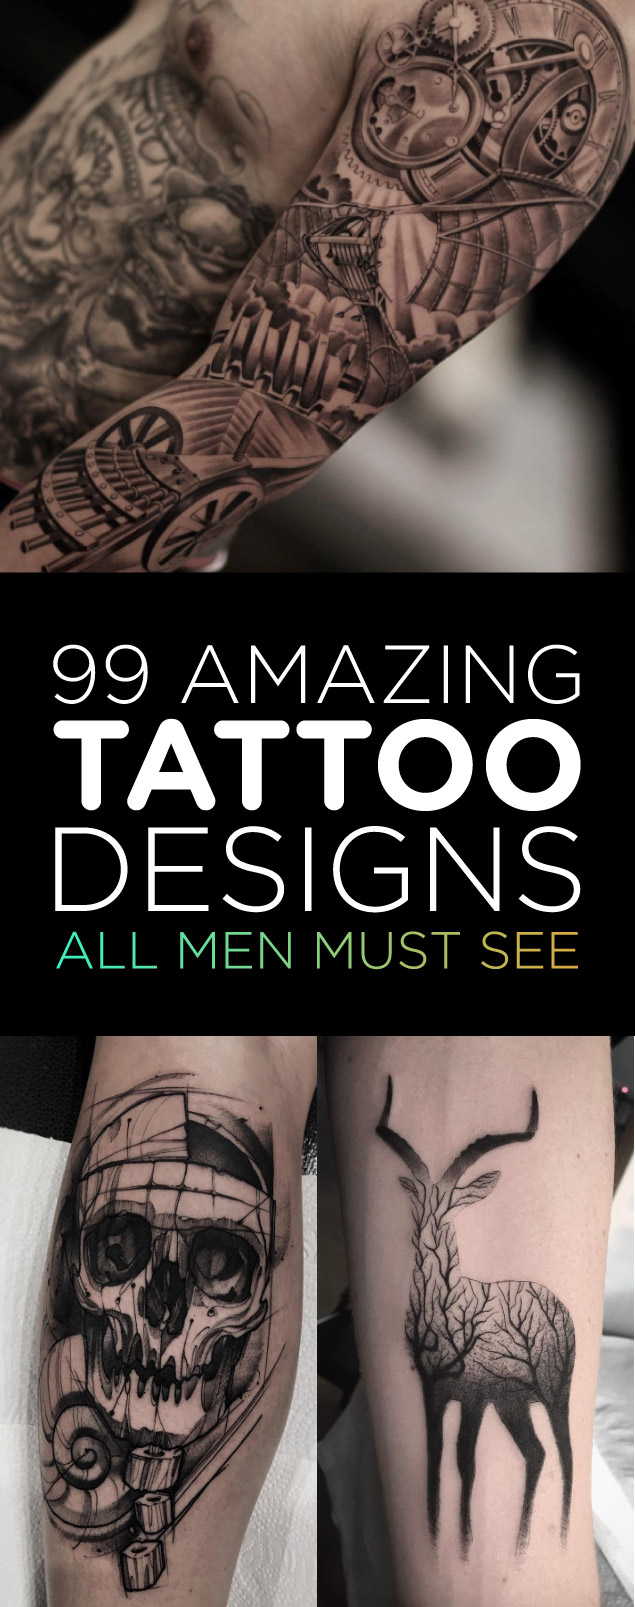 99 Amazing Tattoo Designs All Men Must See | TattooBlend